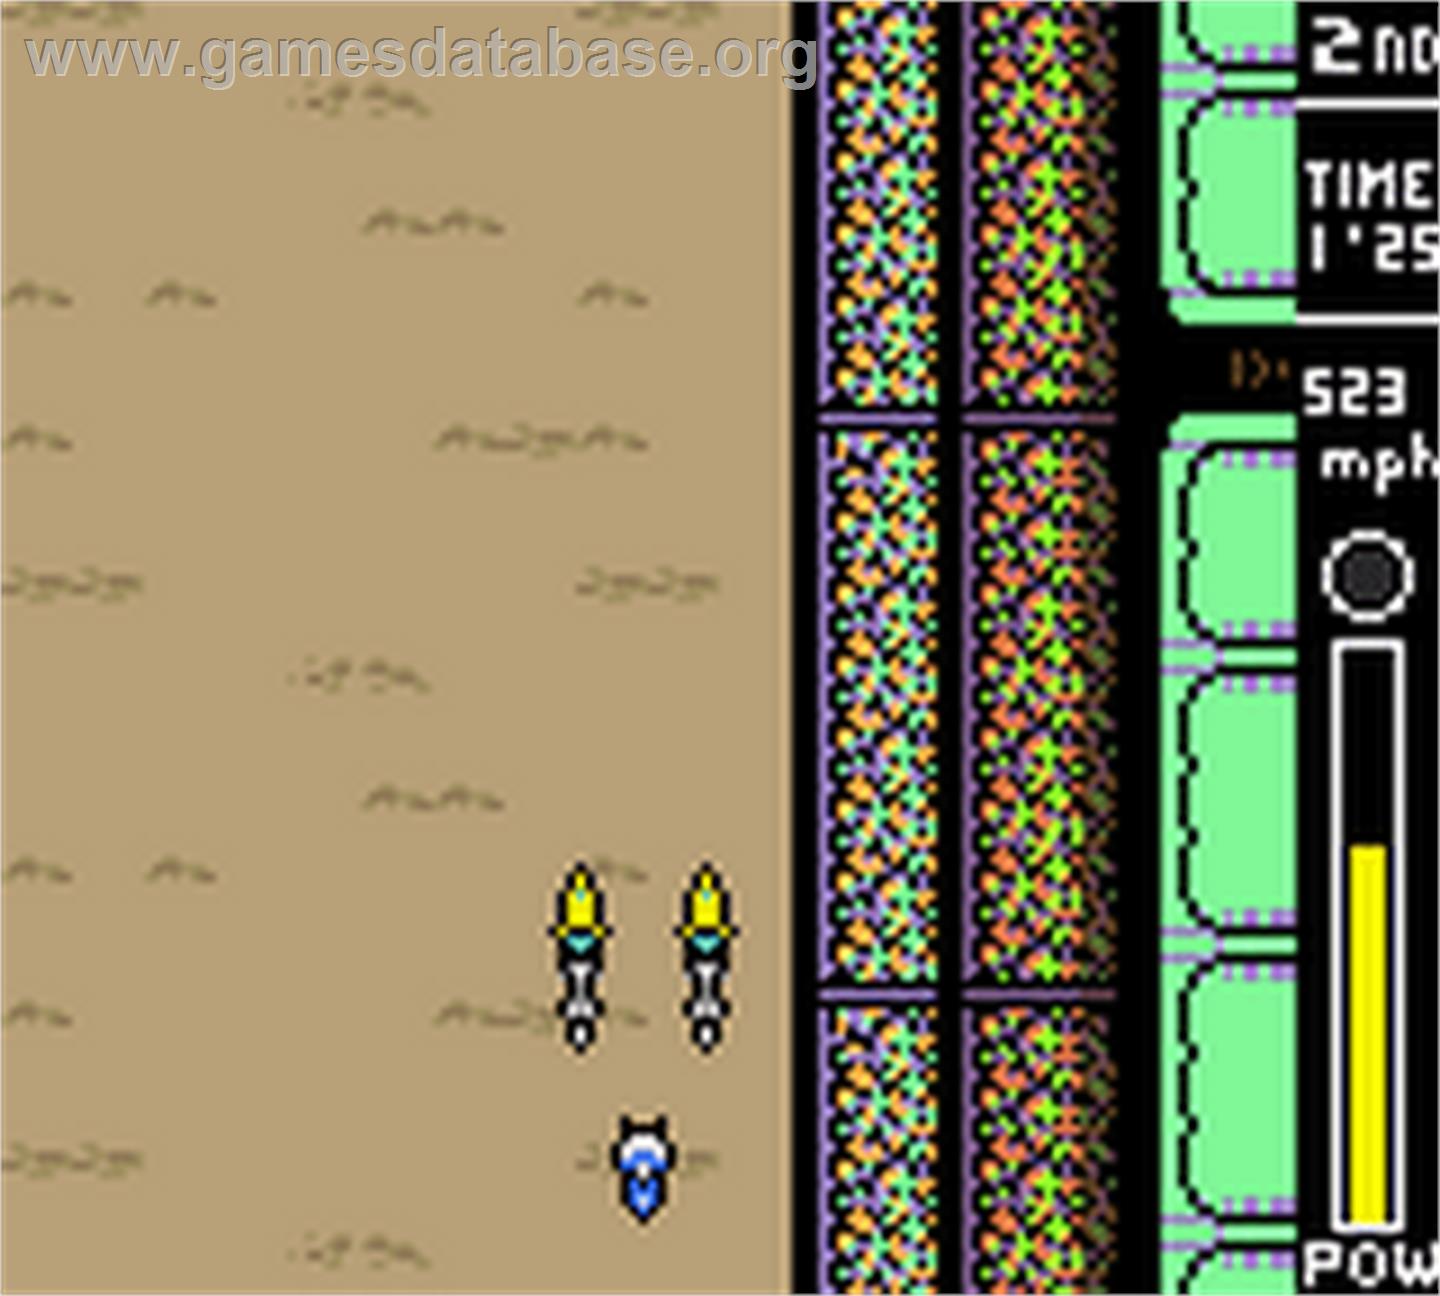 Star Wars: Episode I: Racer - Nintendo Game Boy Color - Artwork - In Game